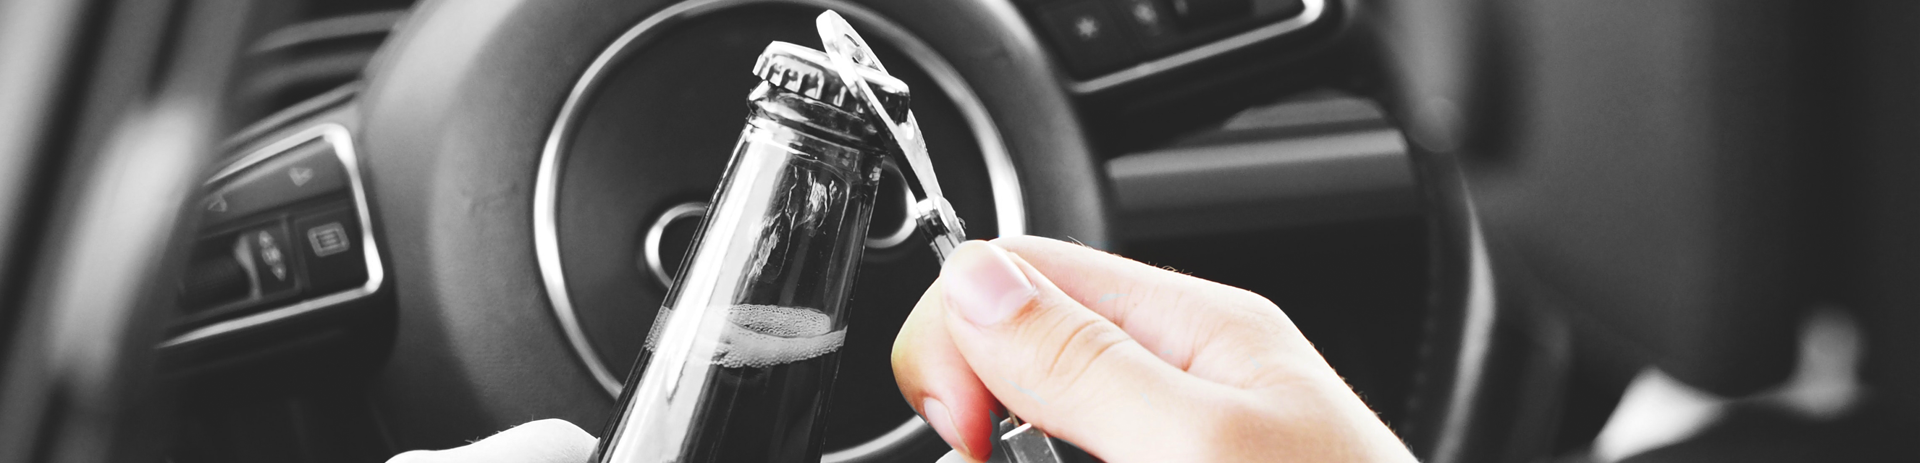 Flinke toename in aantal verkeersdoden door alcohol